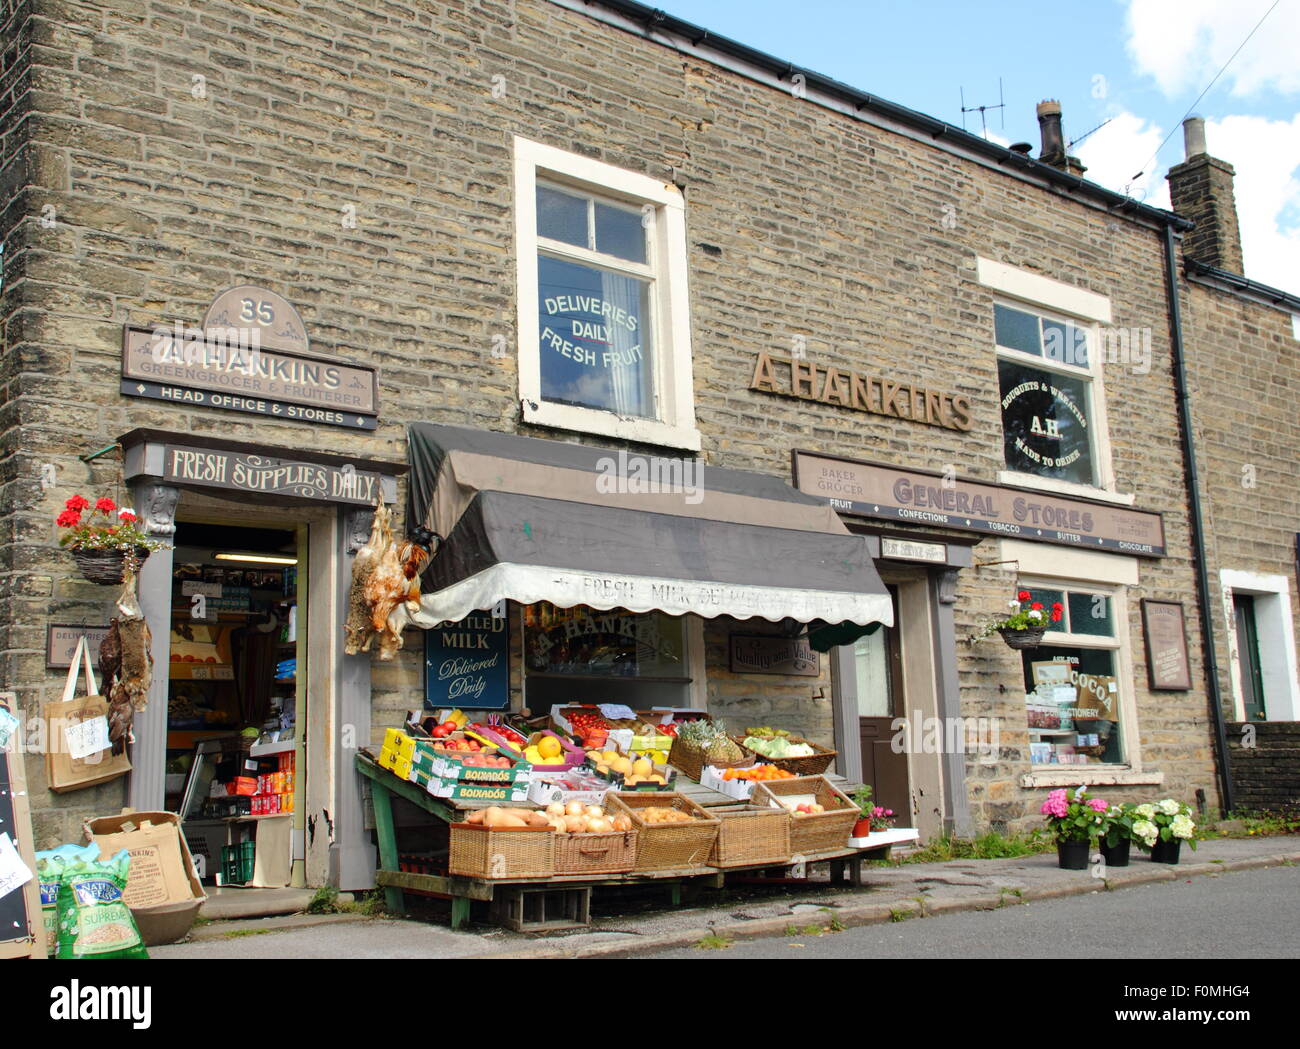 Hankins Lebensmittelhändler in Hayfield Dorf, Peak District, England UK - Drehort auf BBC Dram, The Village. Stockfoto